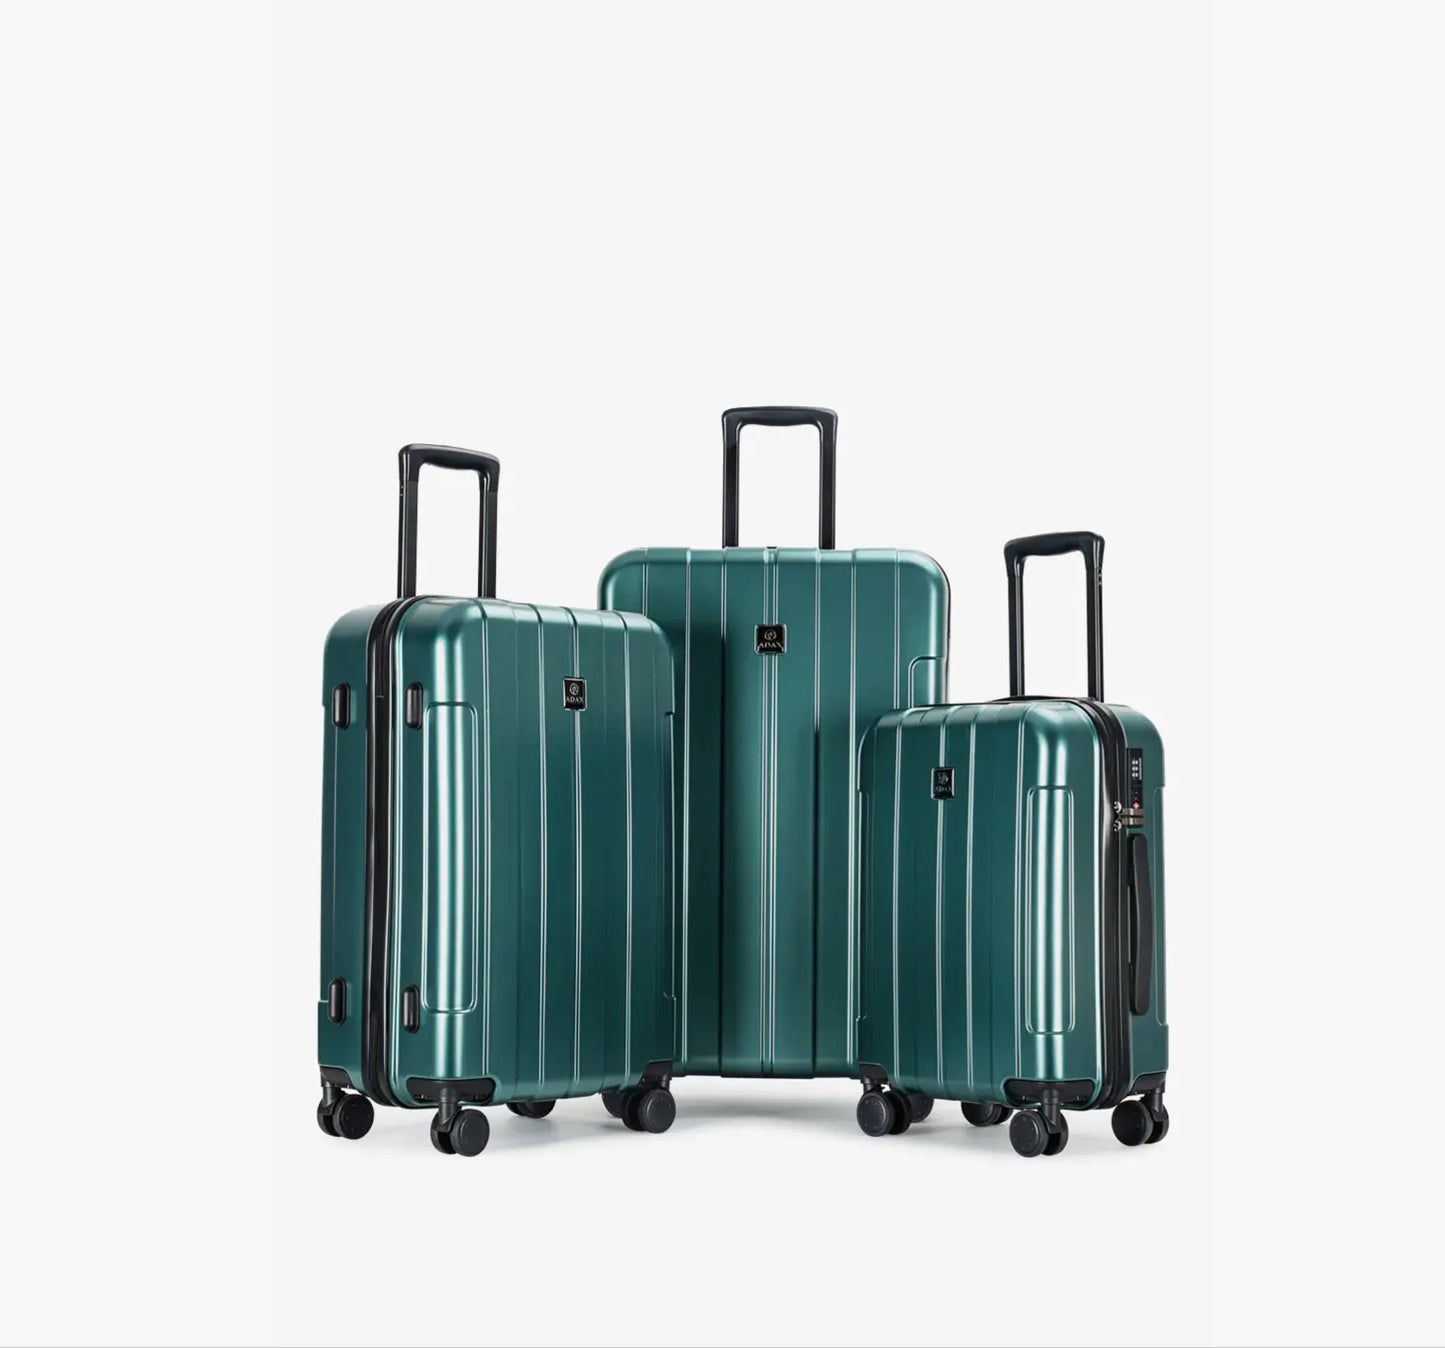 adax grønne kufferter alle 3 størrelser